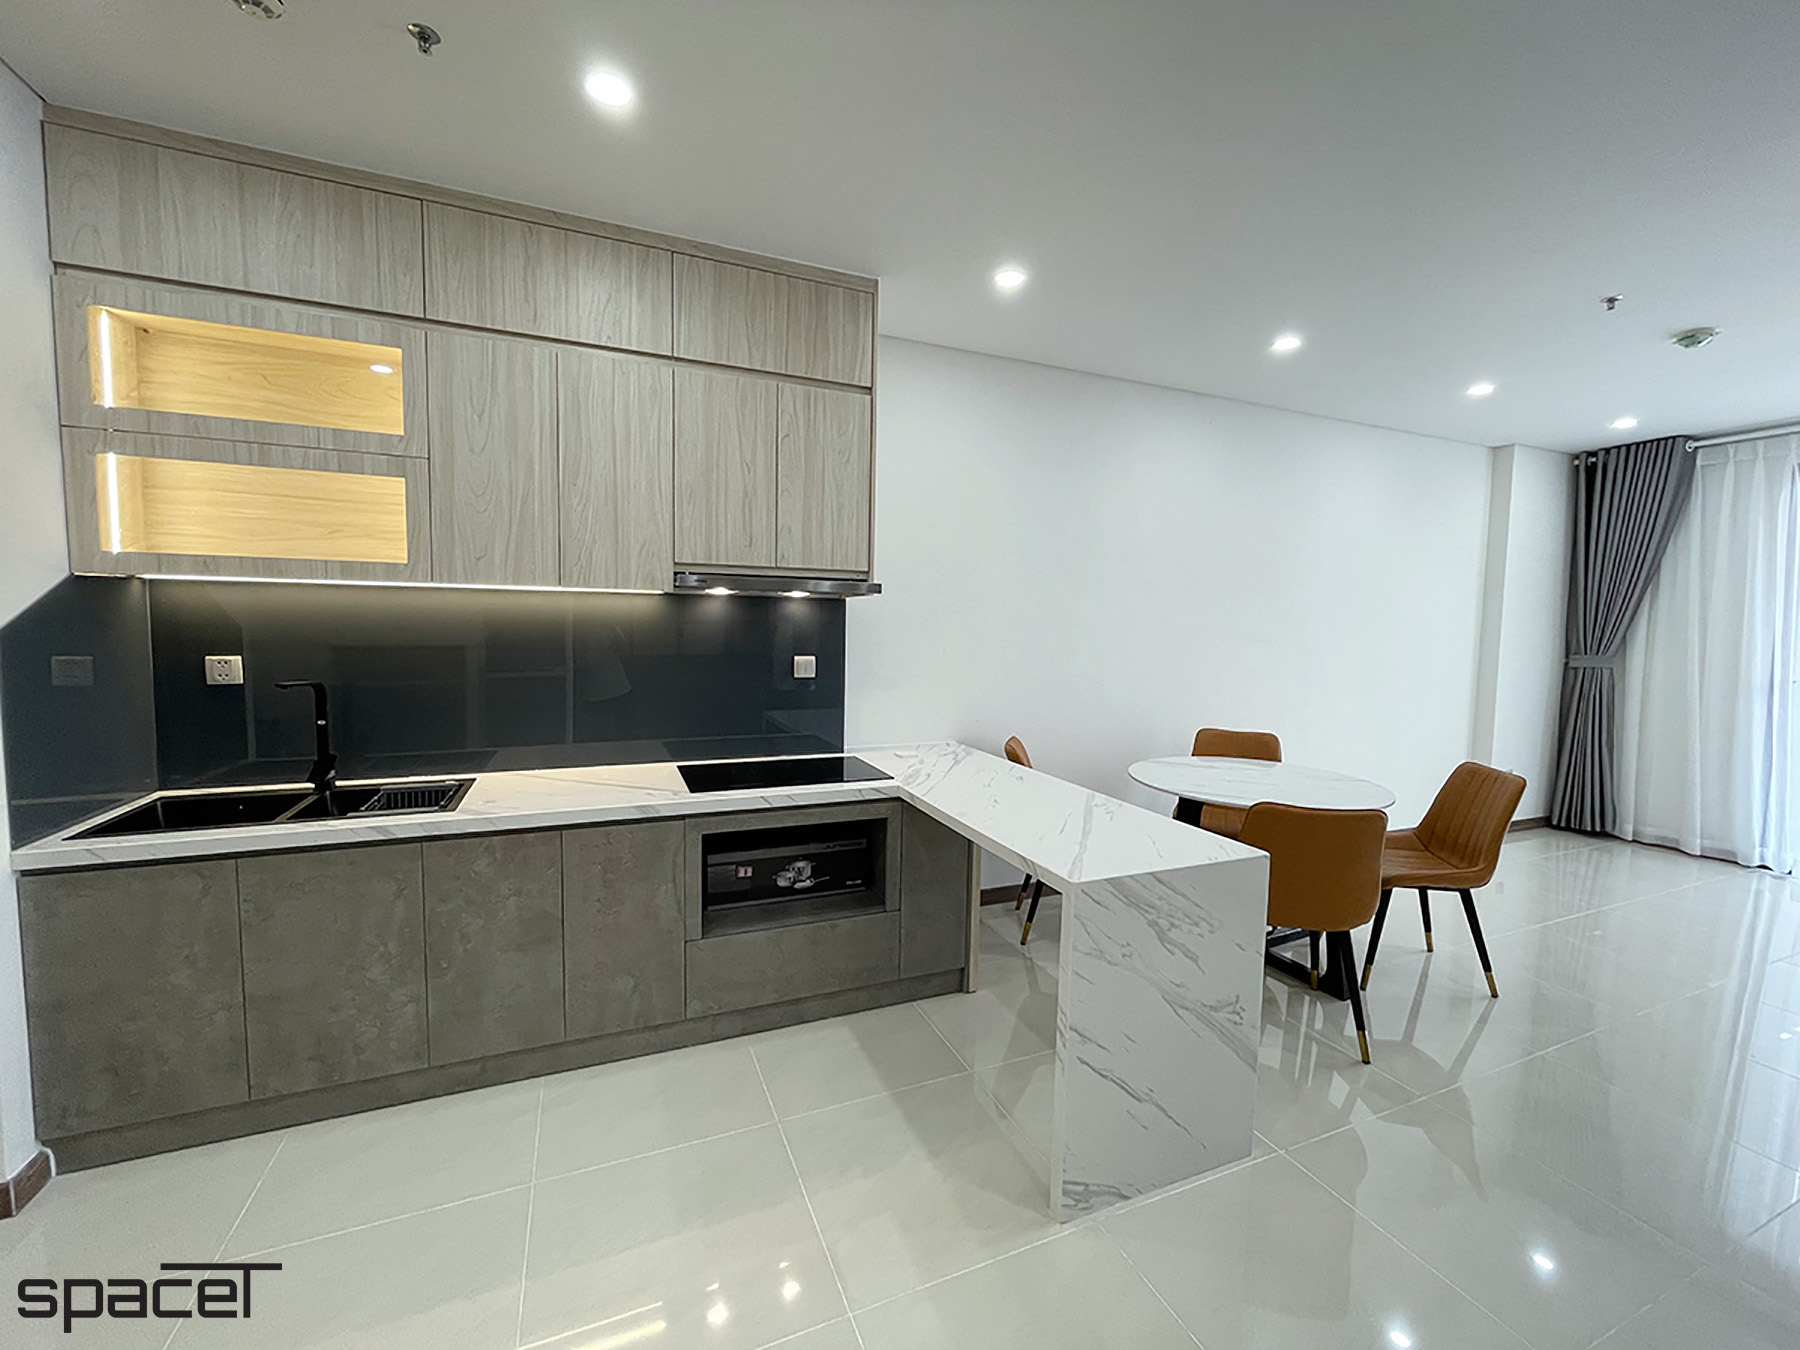 Phòng bếp, phong cách Hiện đại Modern, hoàn thiện nội thất, căn hộ Iris 4 Hà Đô Centrosa Garden